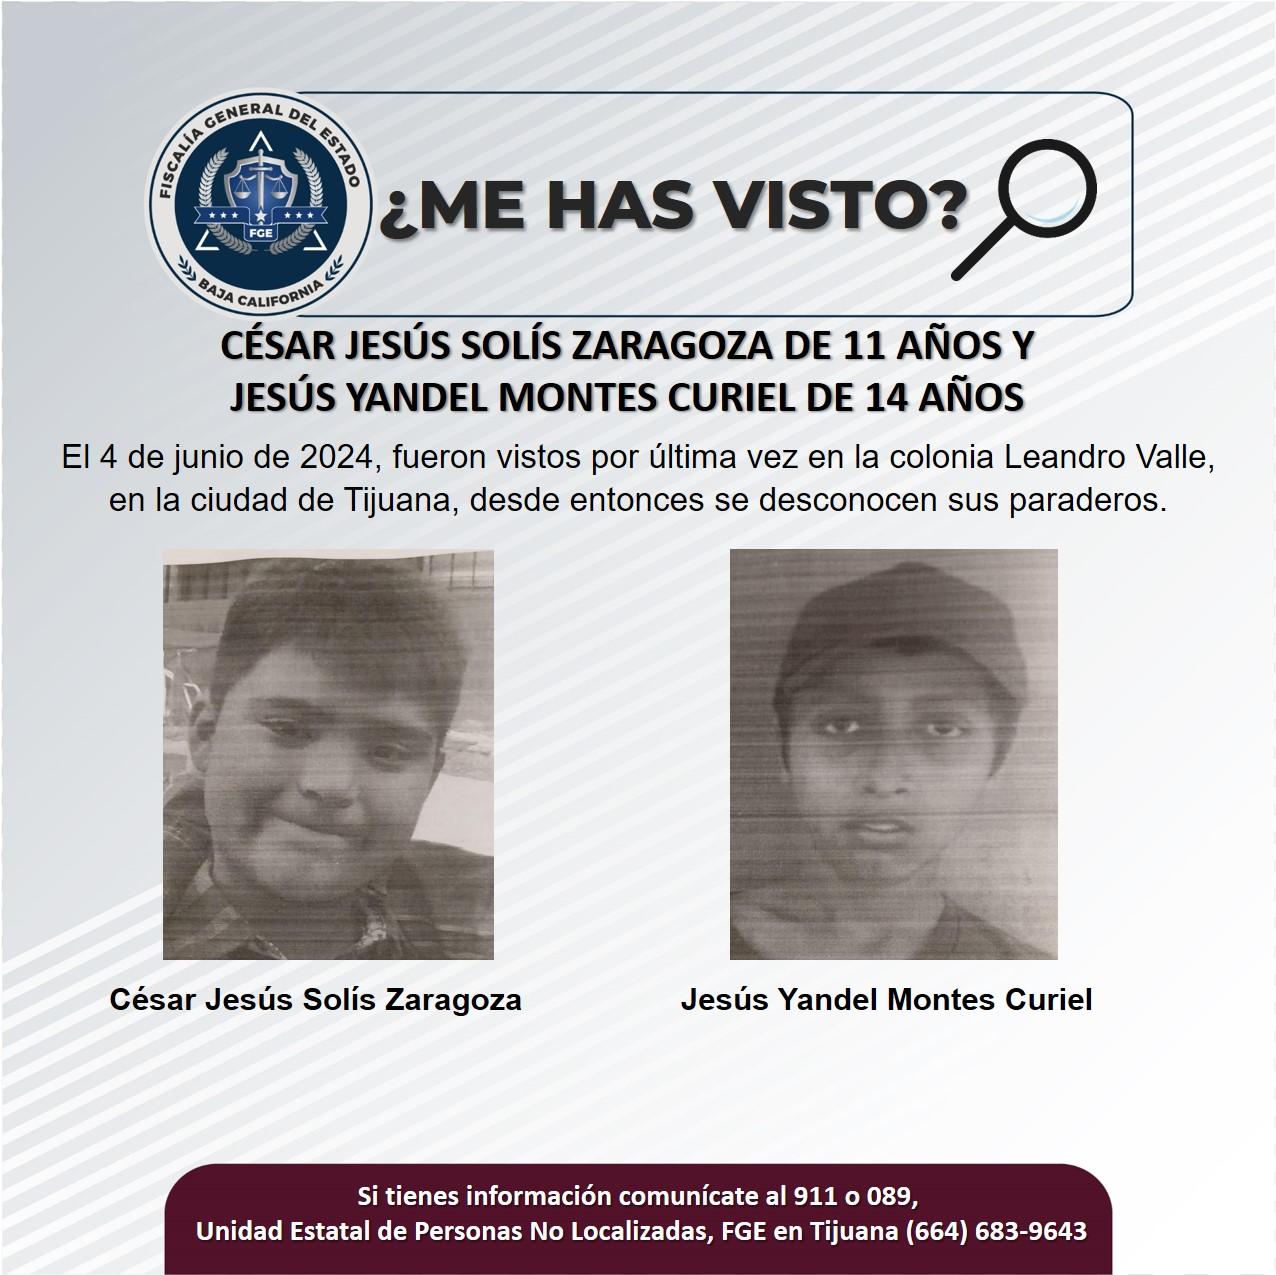 Servicio social: Se buscan a César Jesús Solís Zaragoza de 11 años y Jesús Yandel Montes Curiel de 14 años de edad